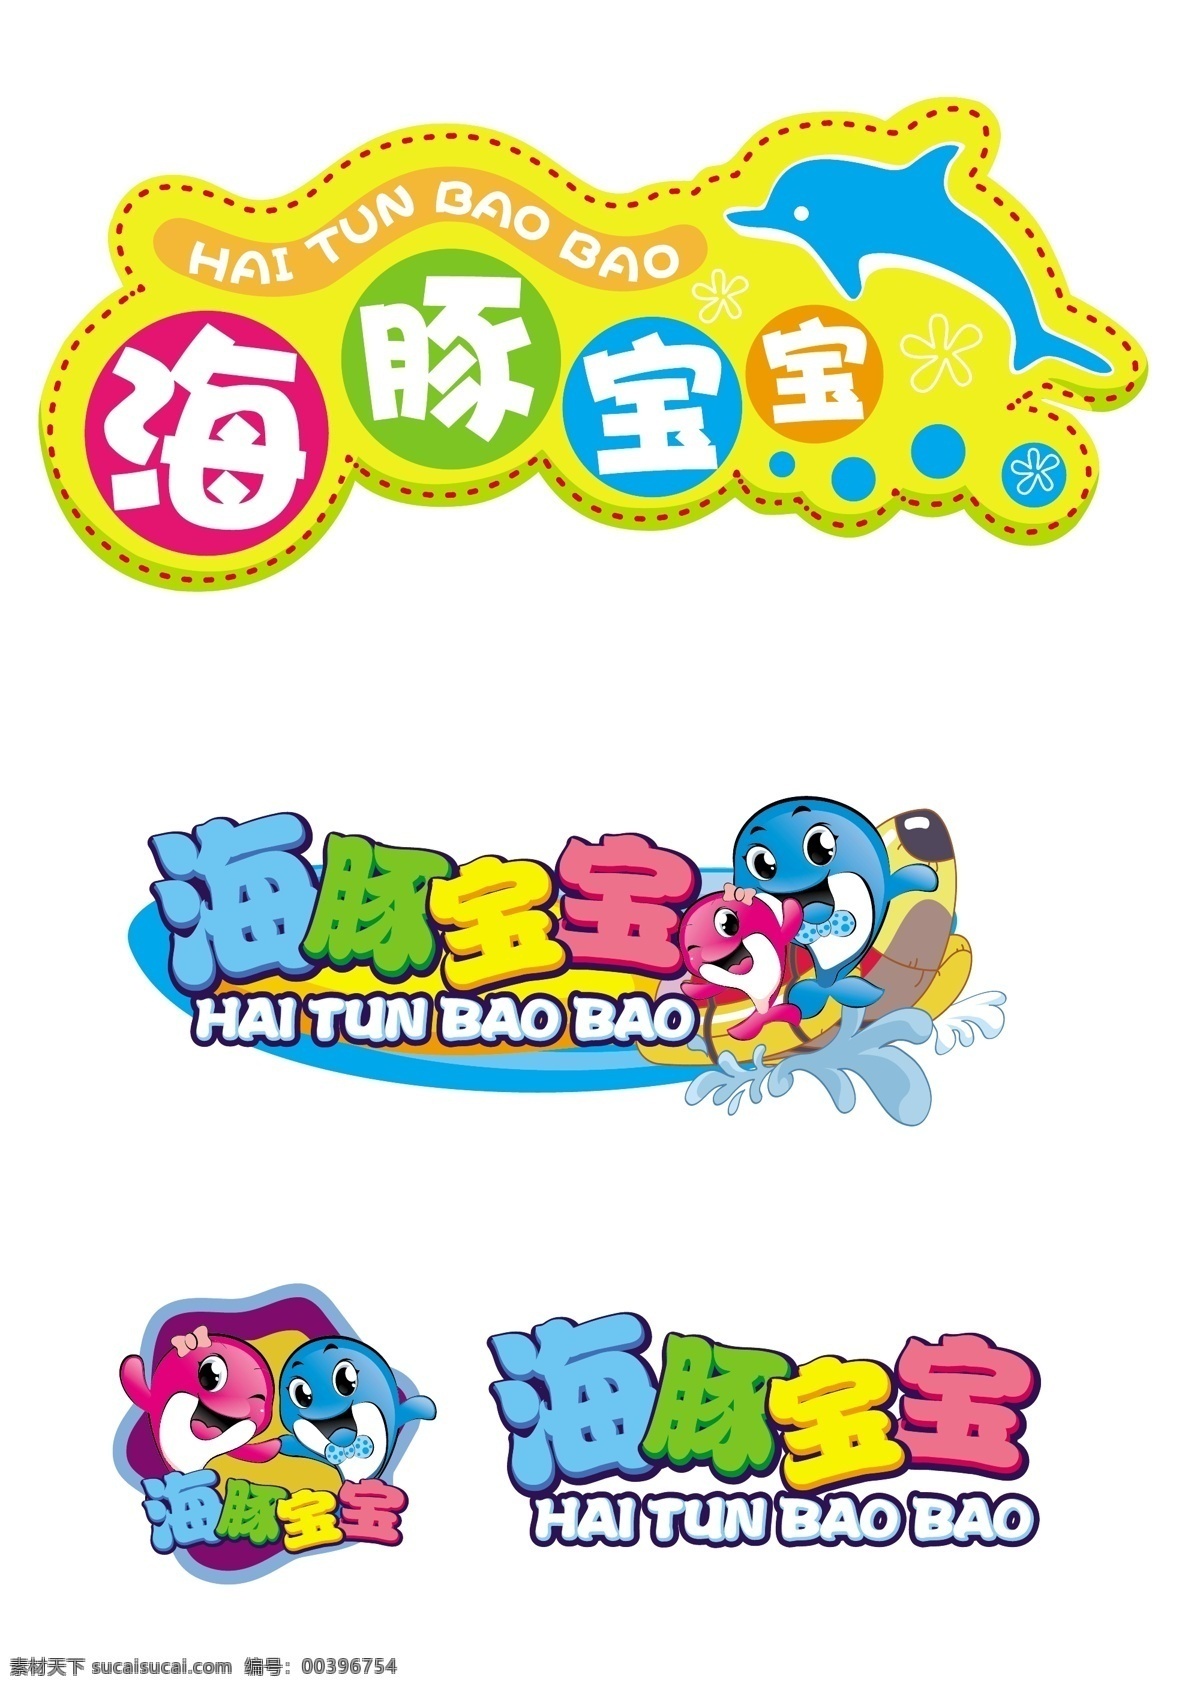 海豚 宝宝 logo 红色logo 游戏logo 蓝色logo 标题logo logo设计